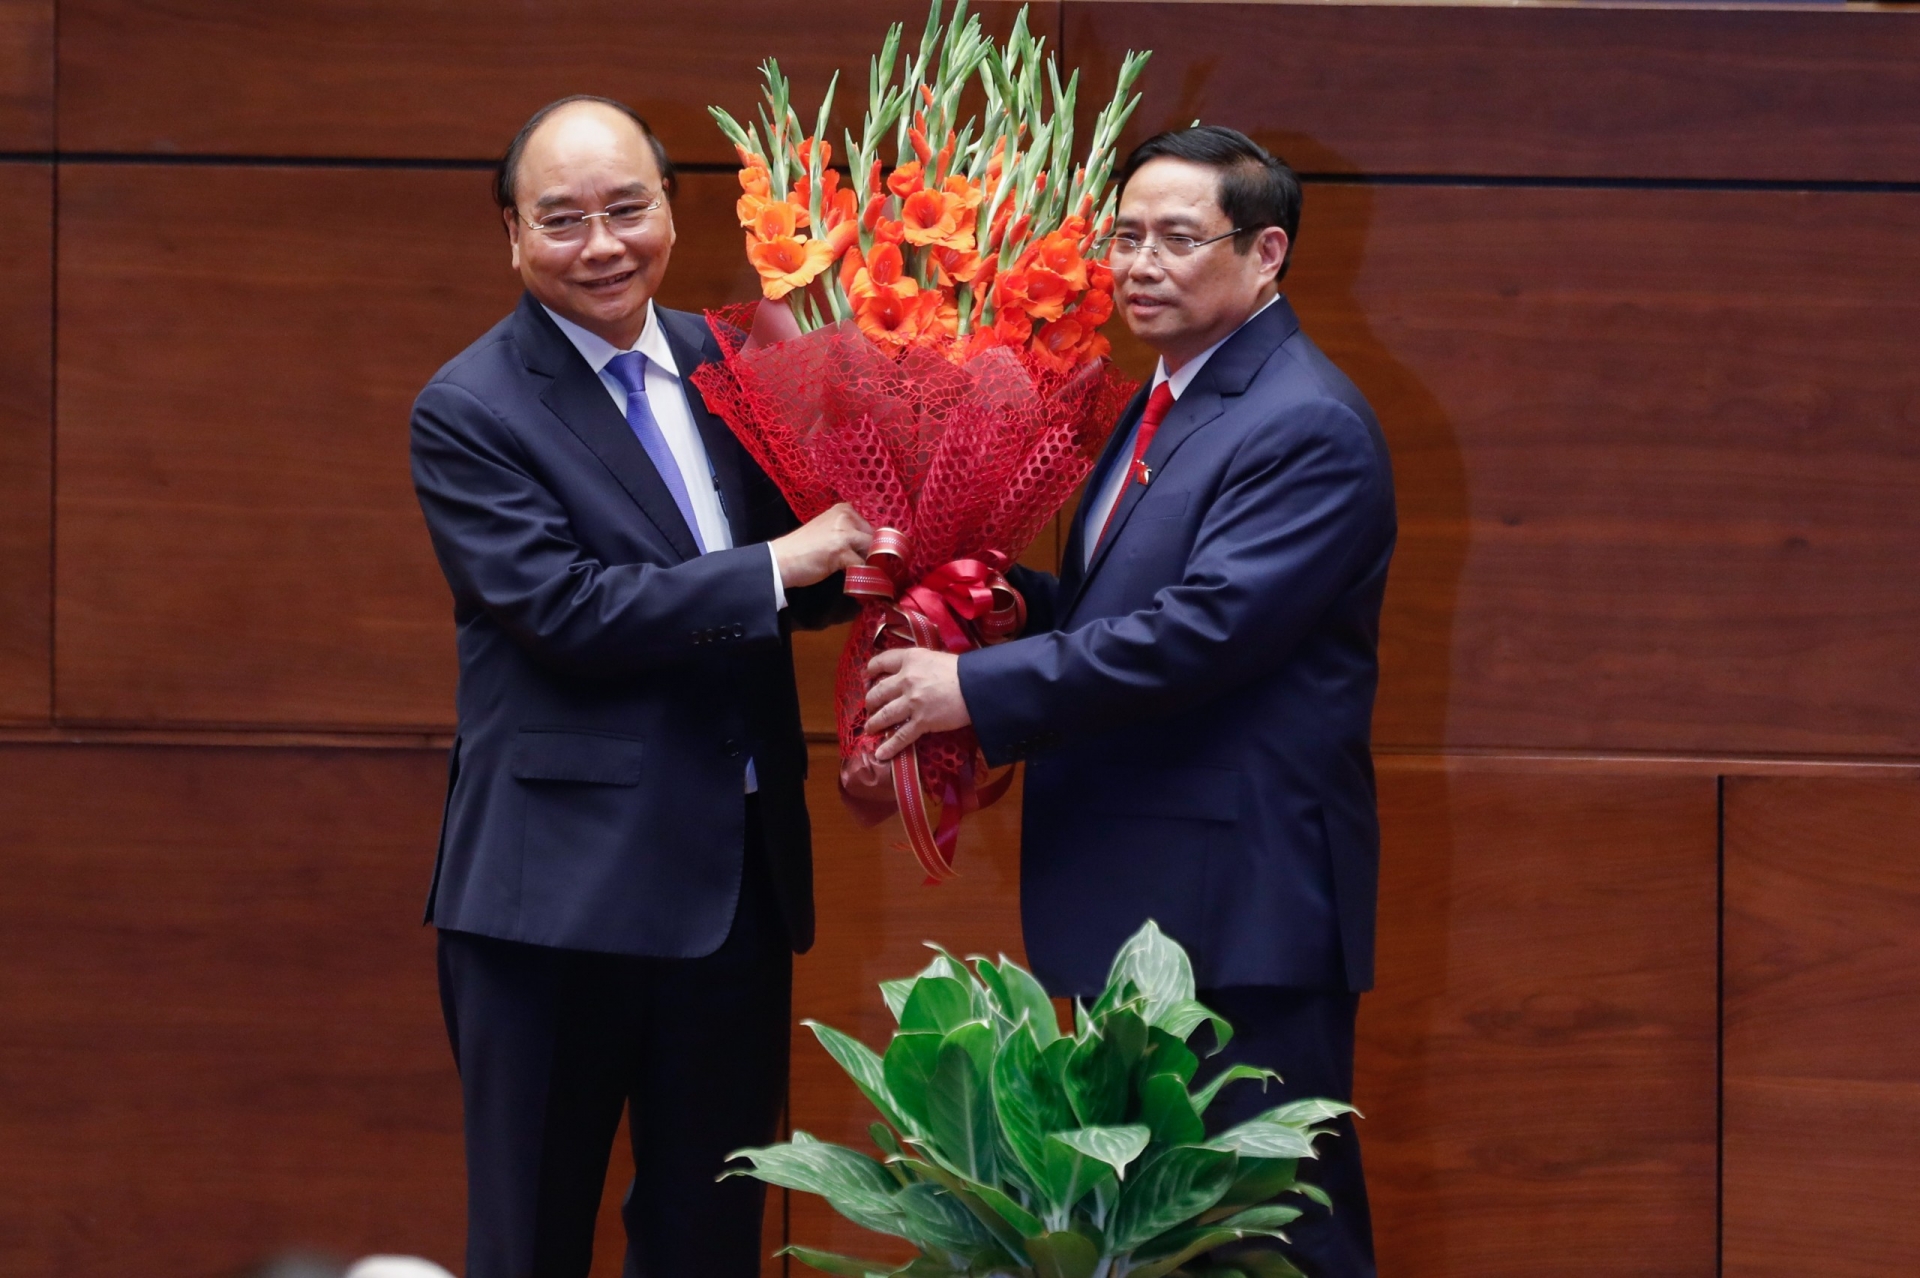 Đồng chí Phạm Minh Chính được bầu giữ chức vụ Thủ tướng Chính phủ